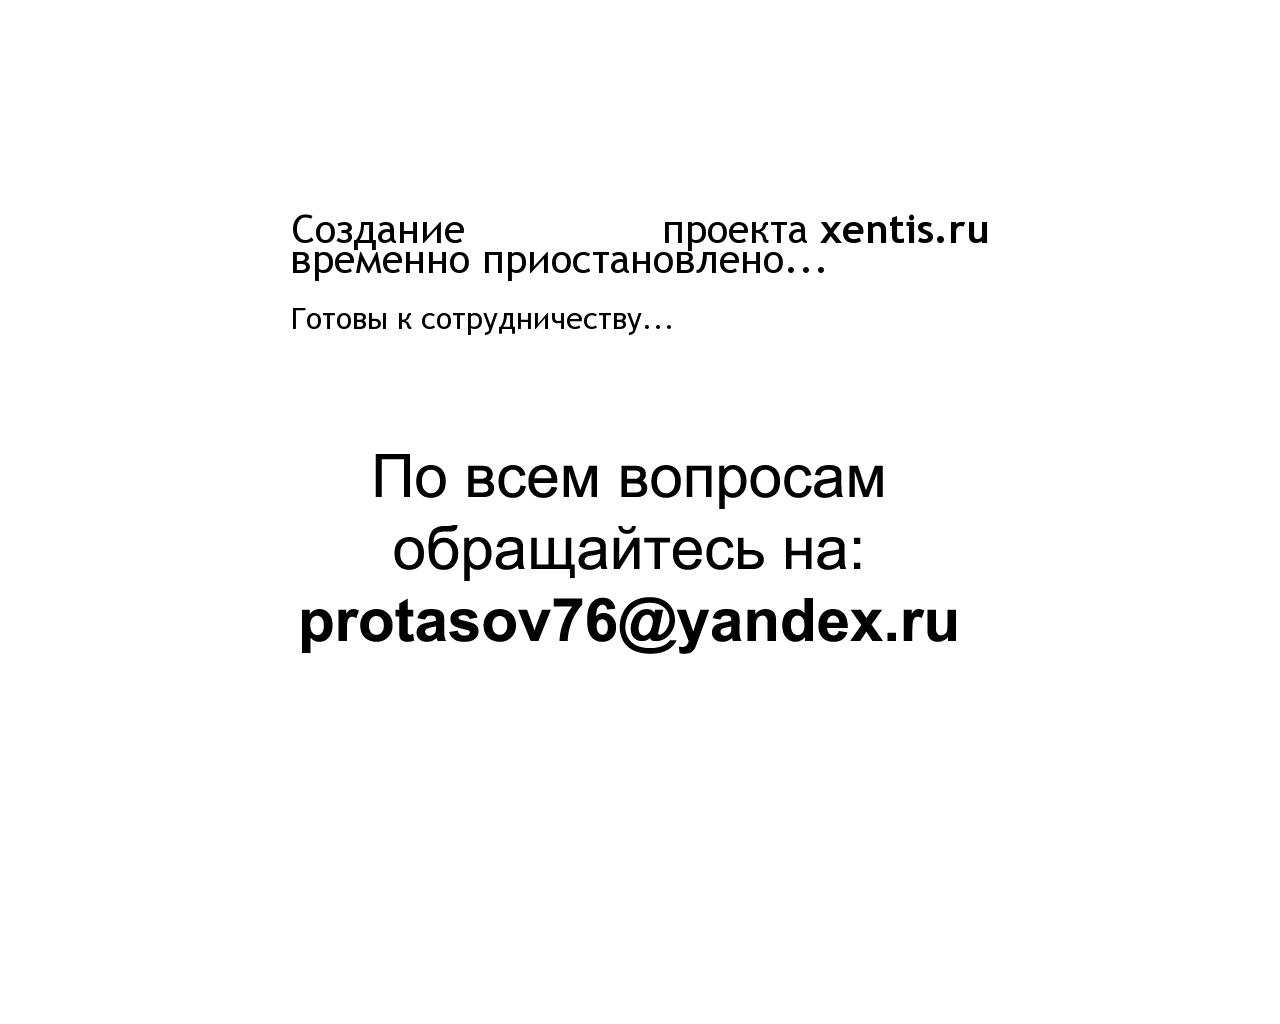 Изображение сайта xentis.ru в разрешении 1280x1024